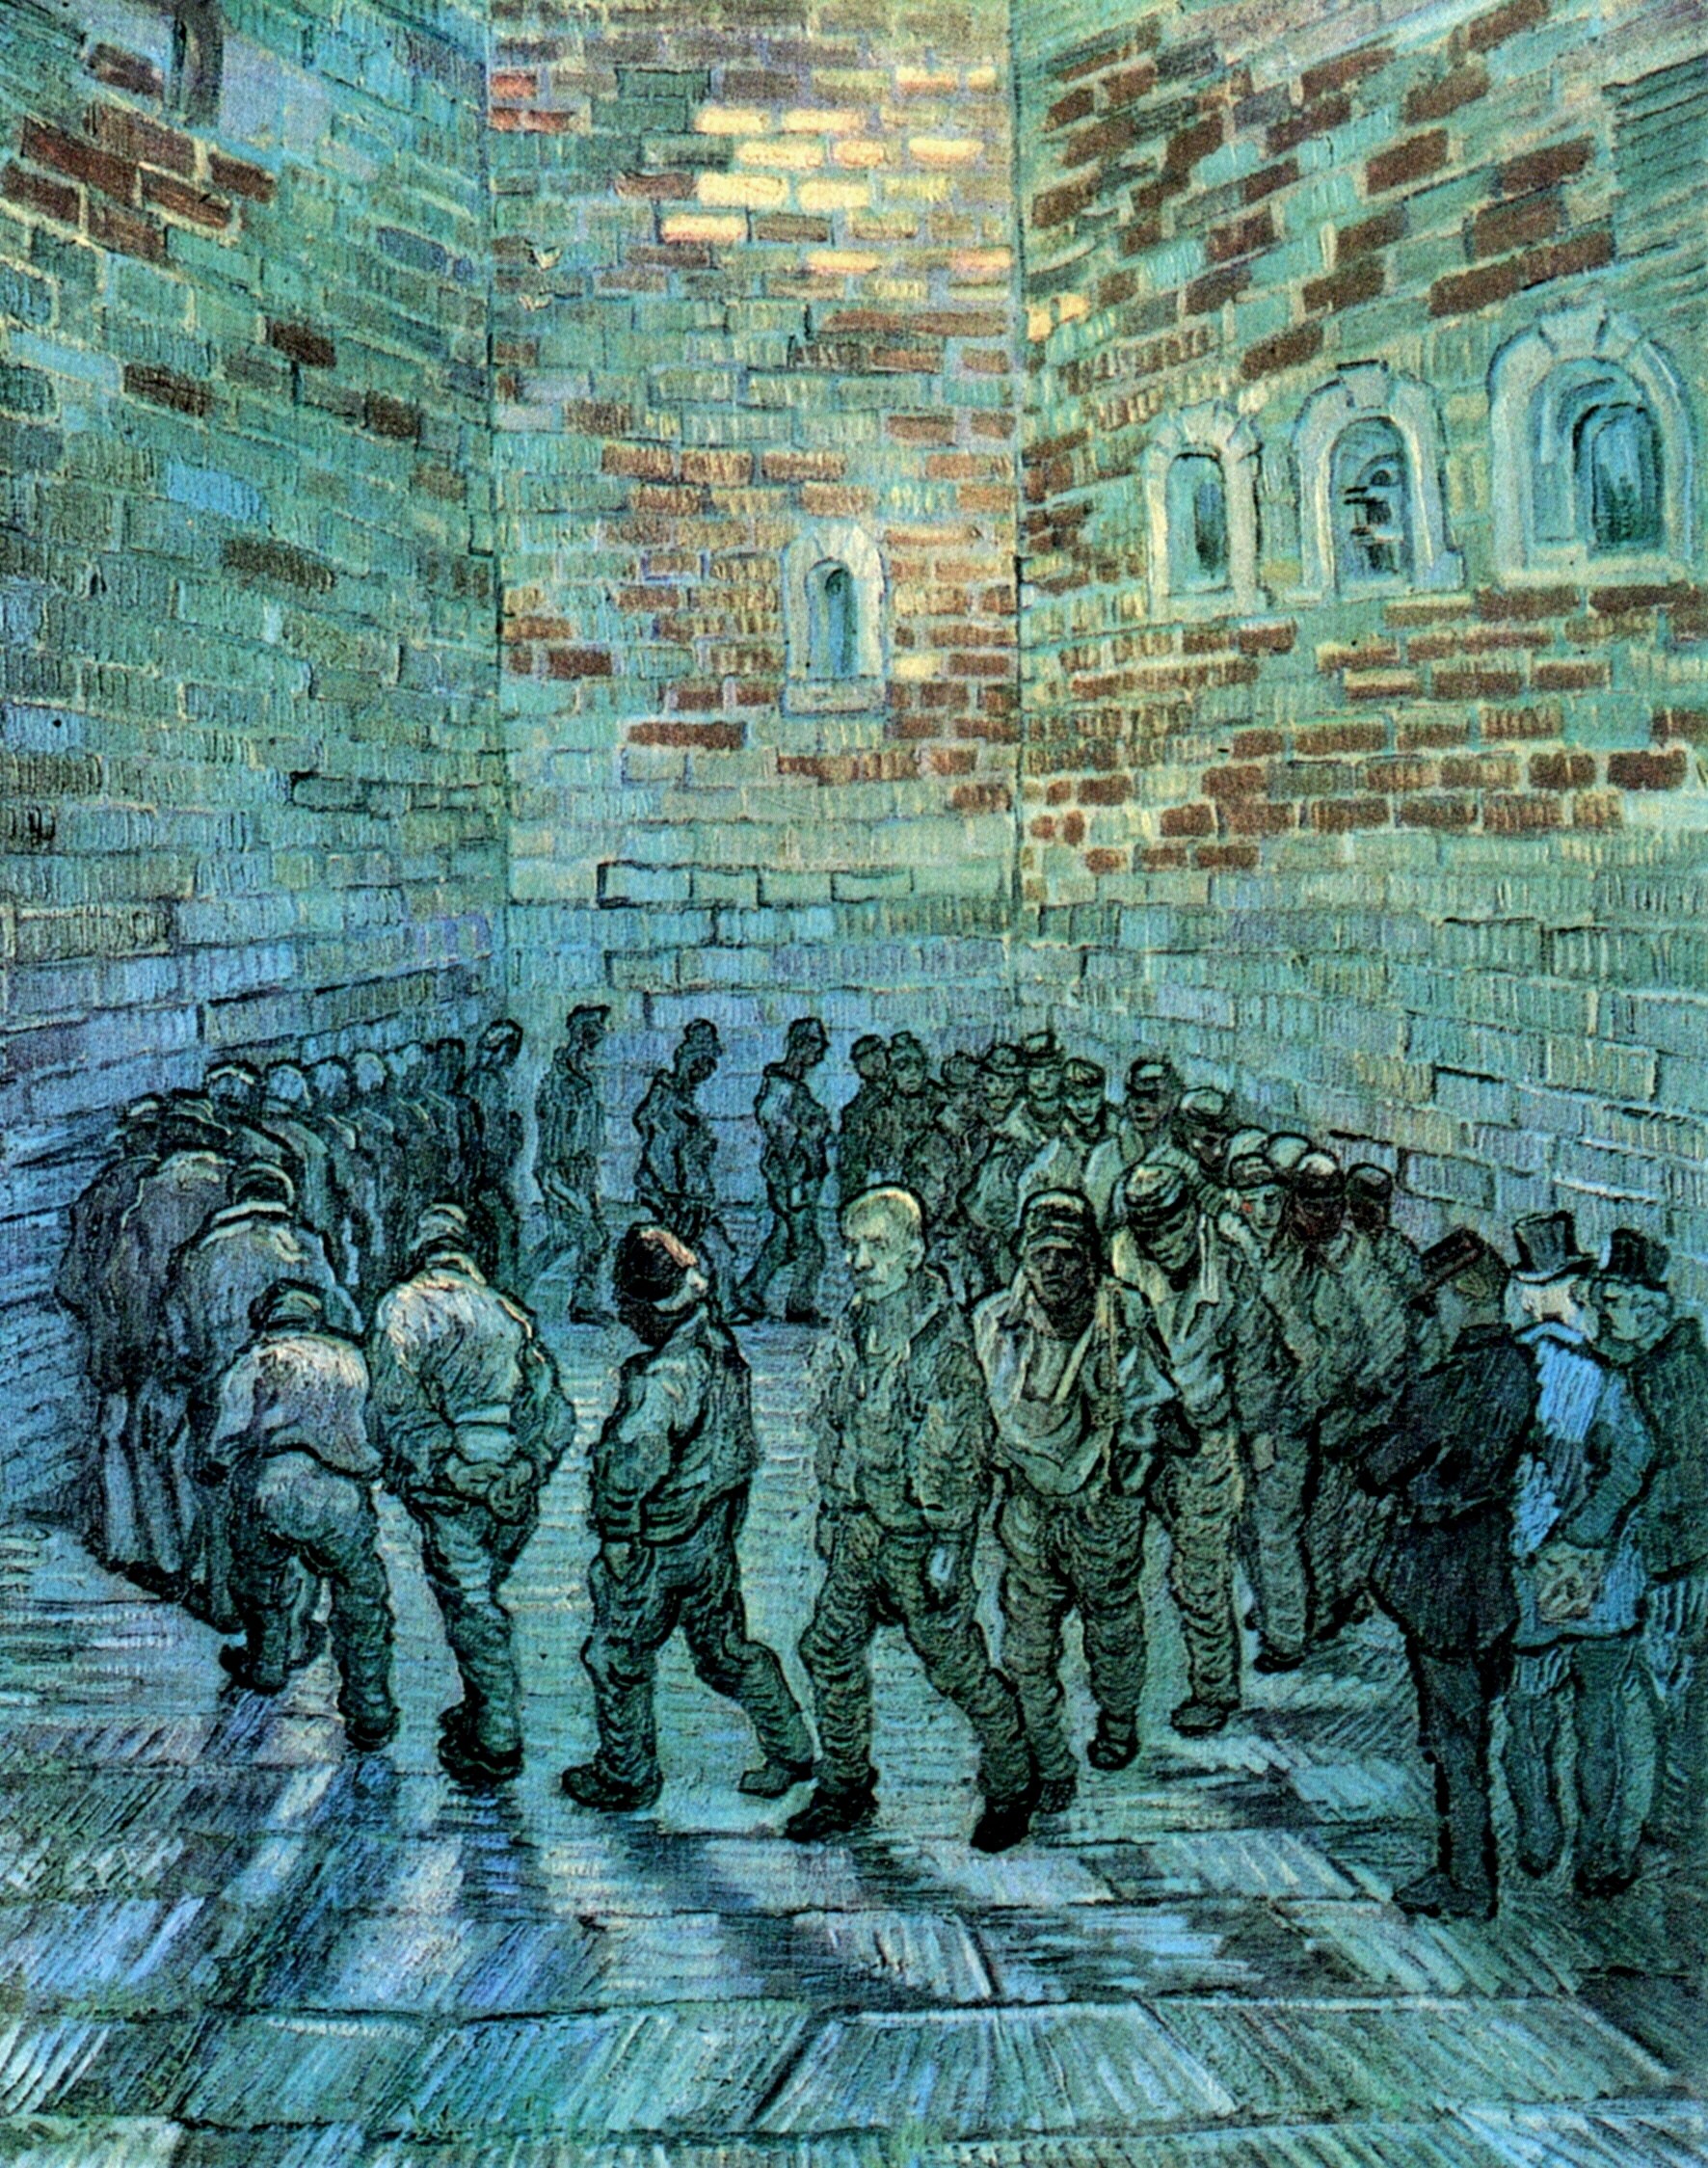 Картина Ван Гога Прогулка заключённых, по работе Доре 1890